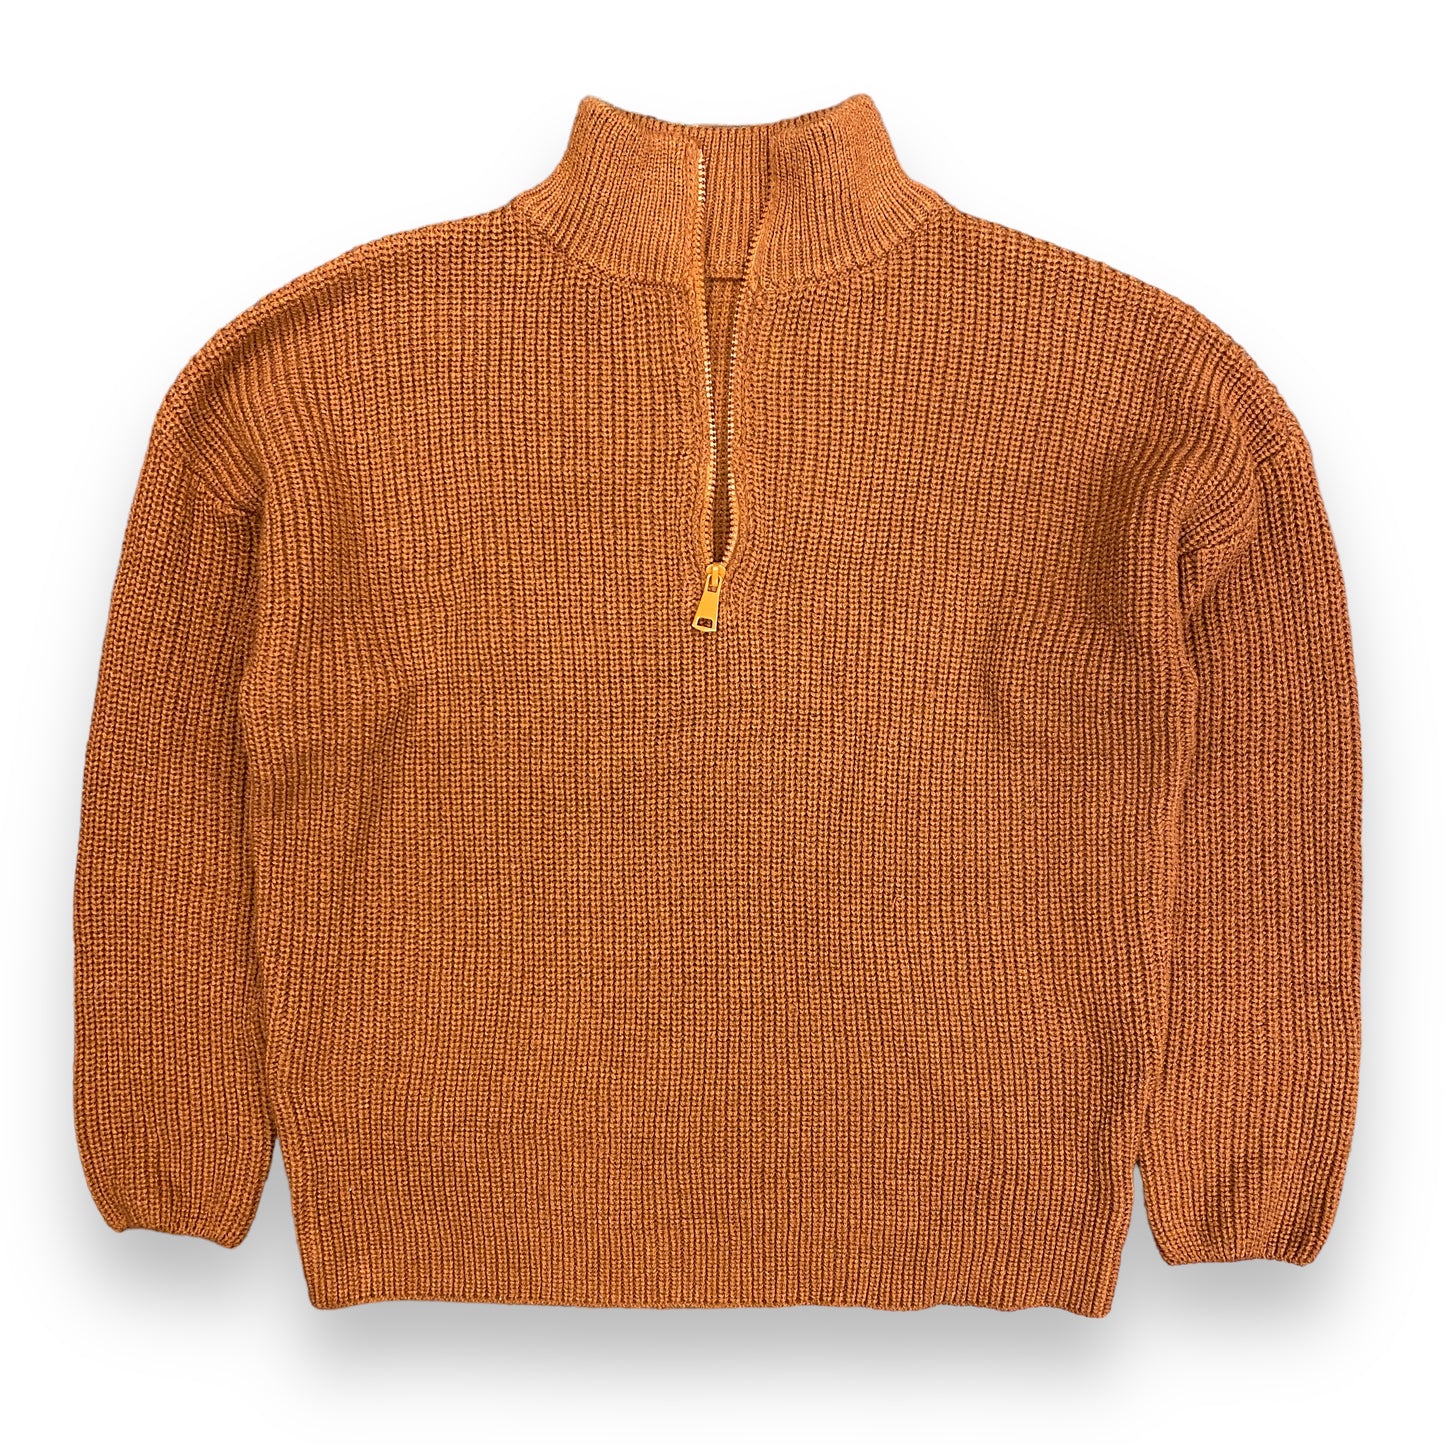 Vintage Carmel Knit Quarter-Zip Sweater - Size M/L